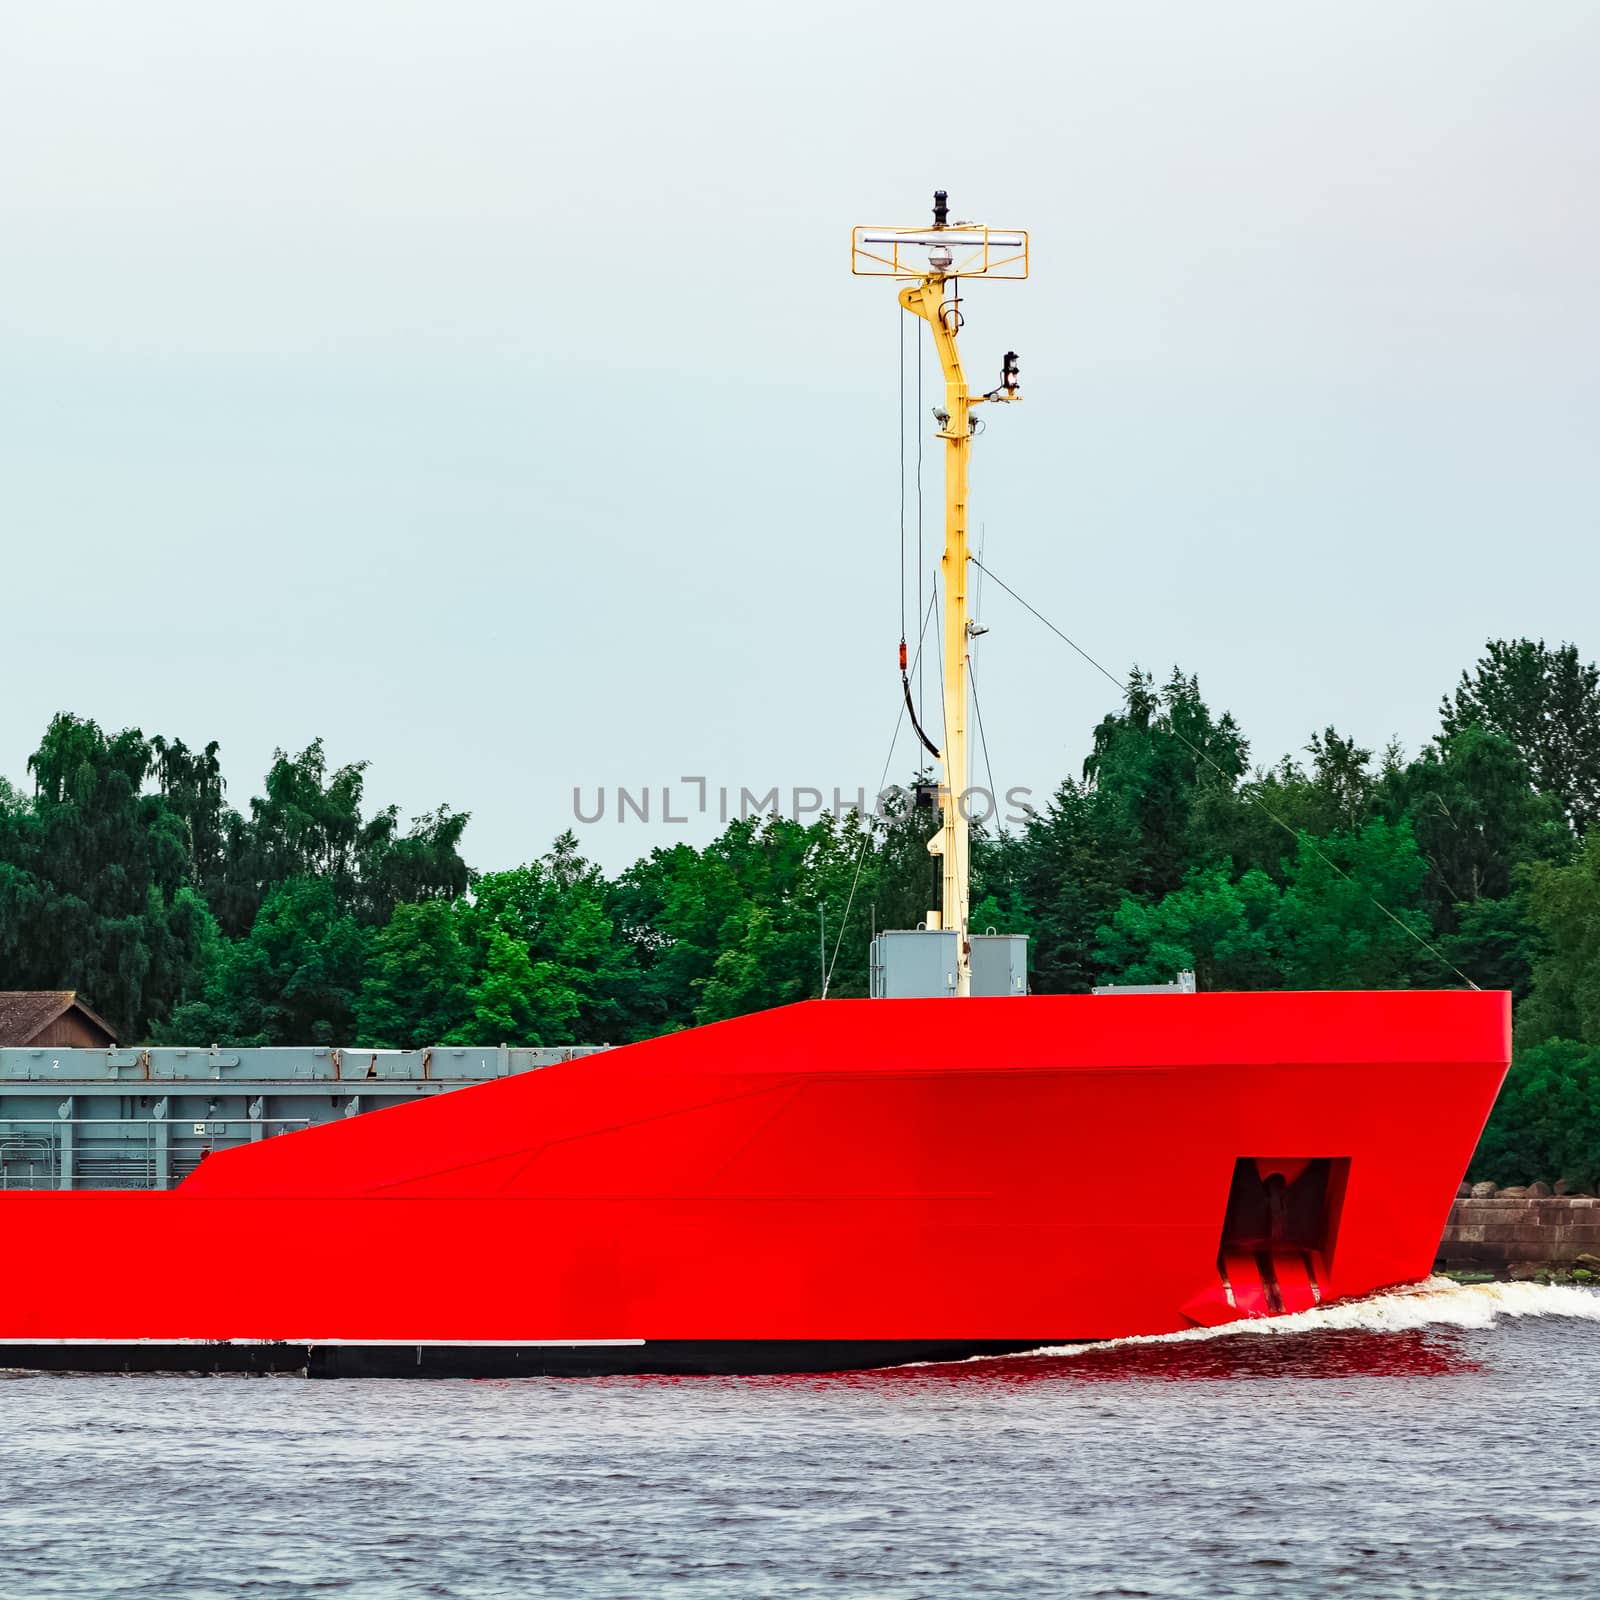 Orange bulker ship by sengnsp